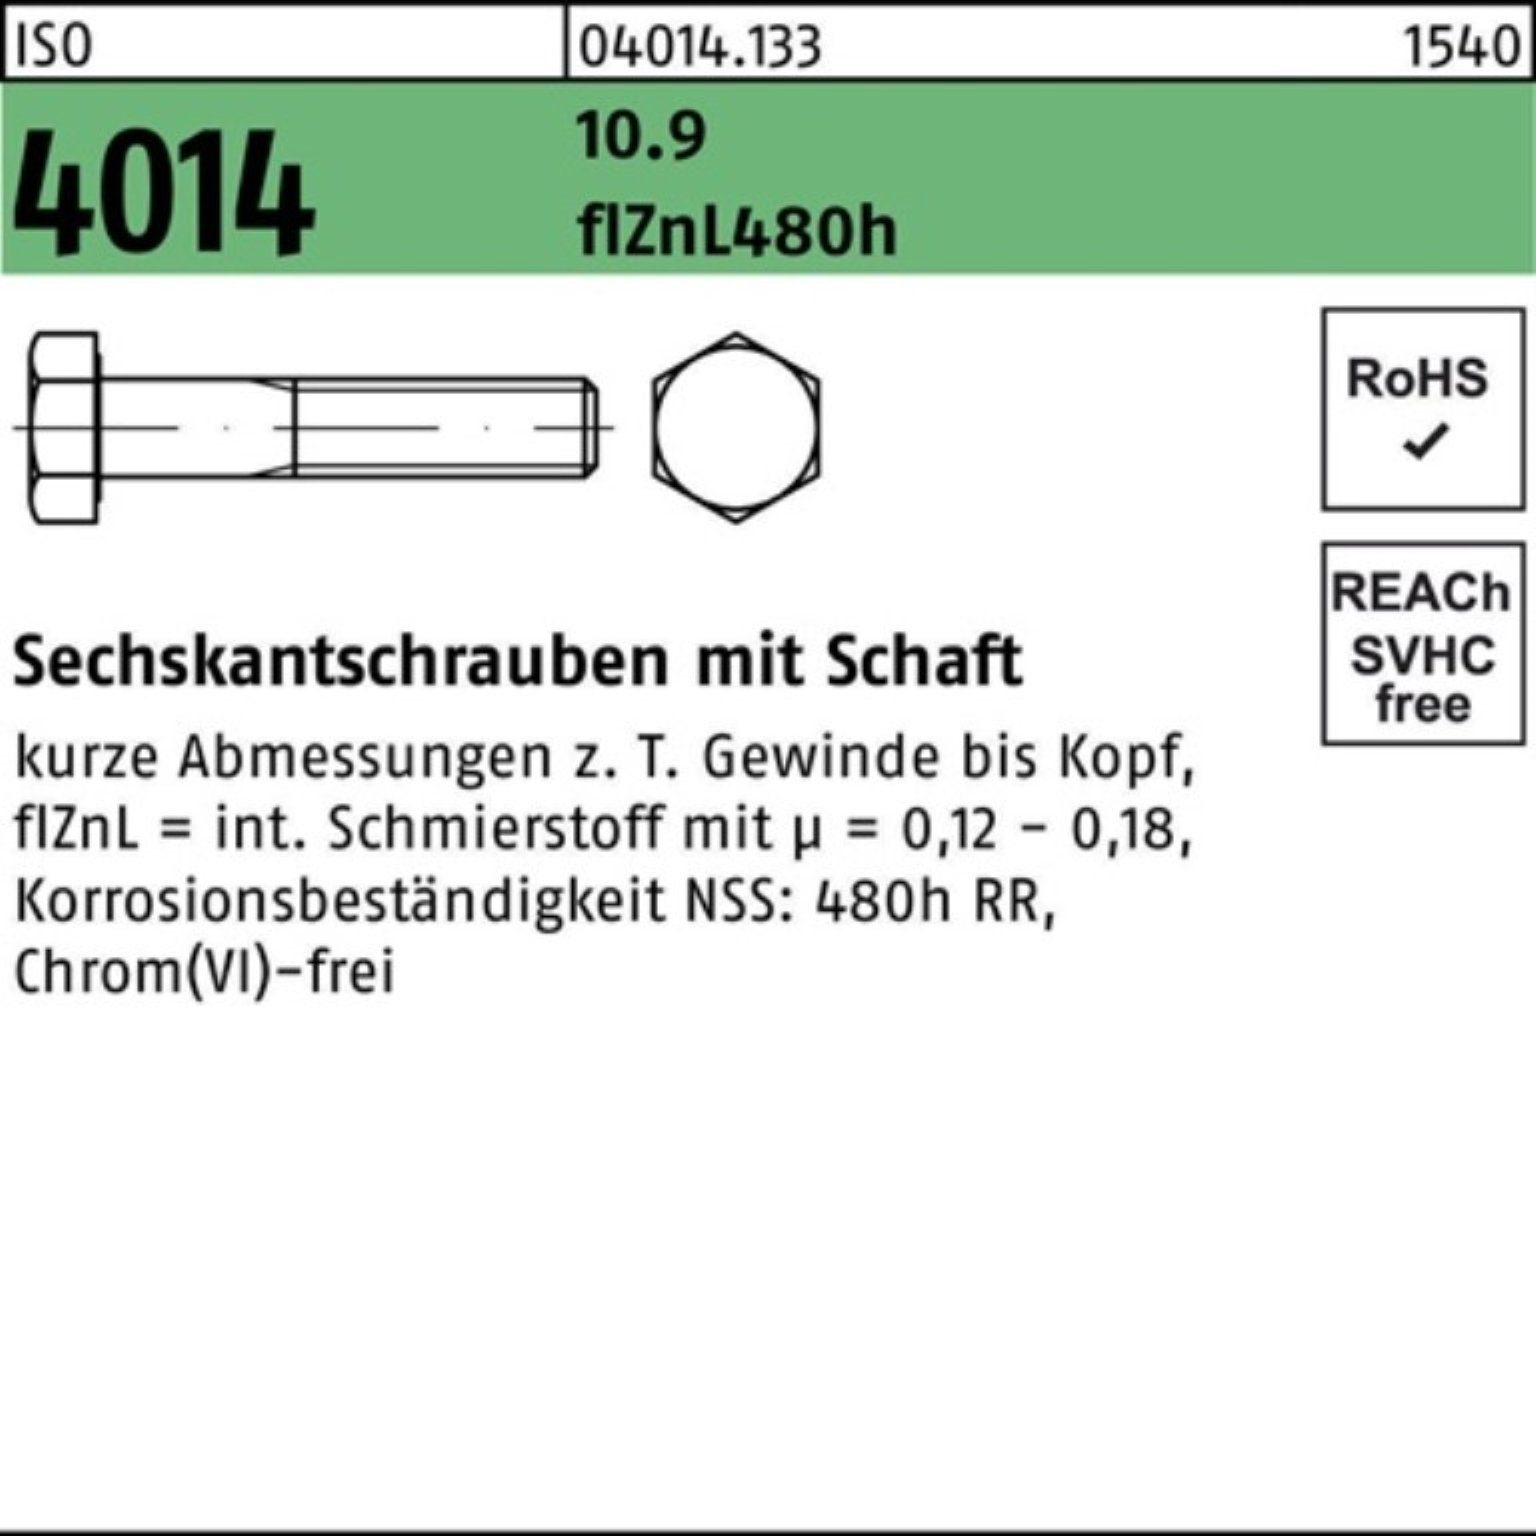 Bufab Sechskantschraube Schaft 10.9 Pack 150 100er 4014 Sechskantschraube M12x ISO zinklamelle